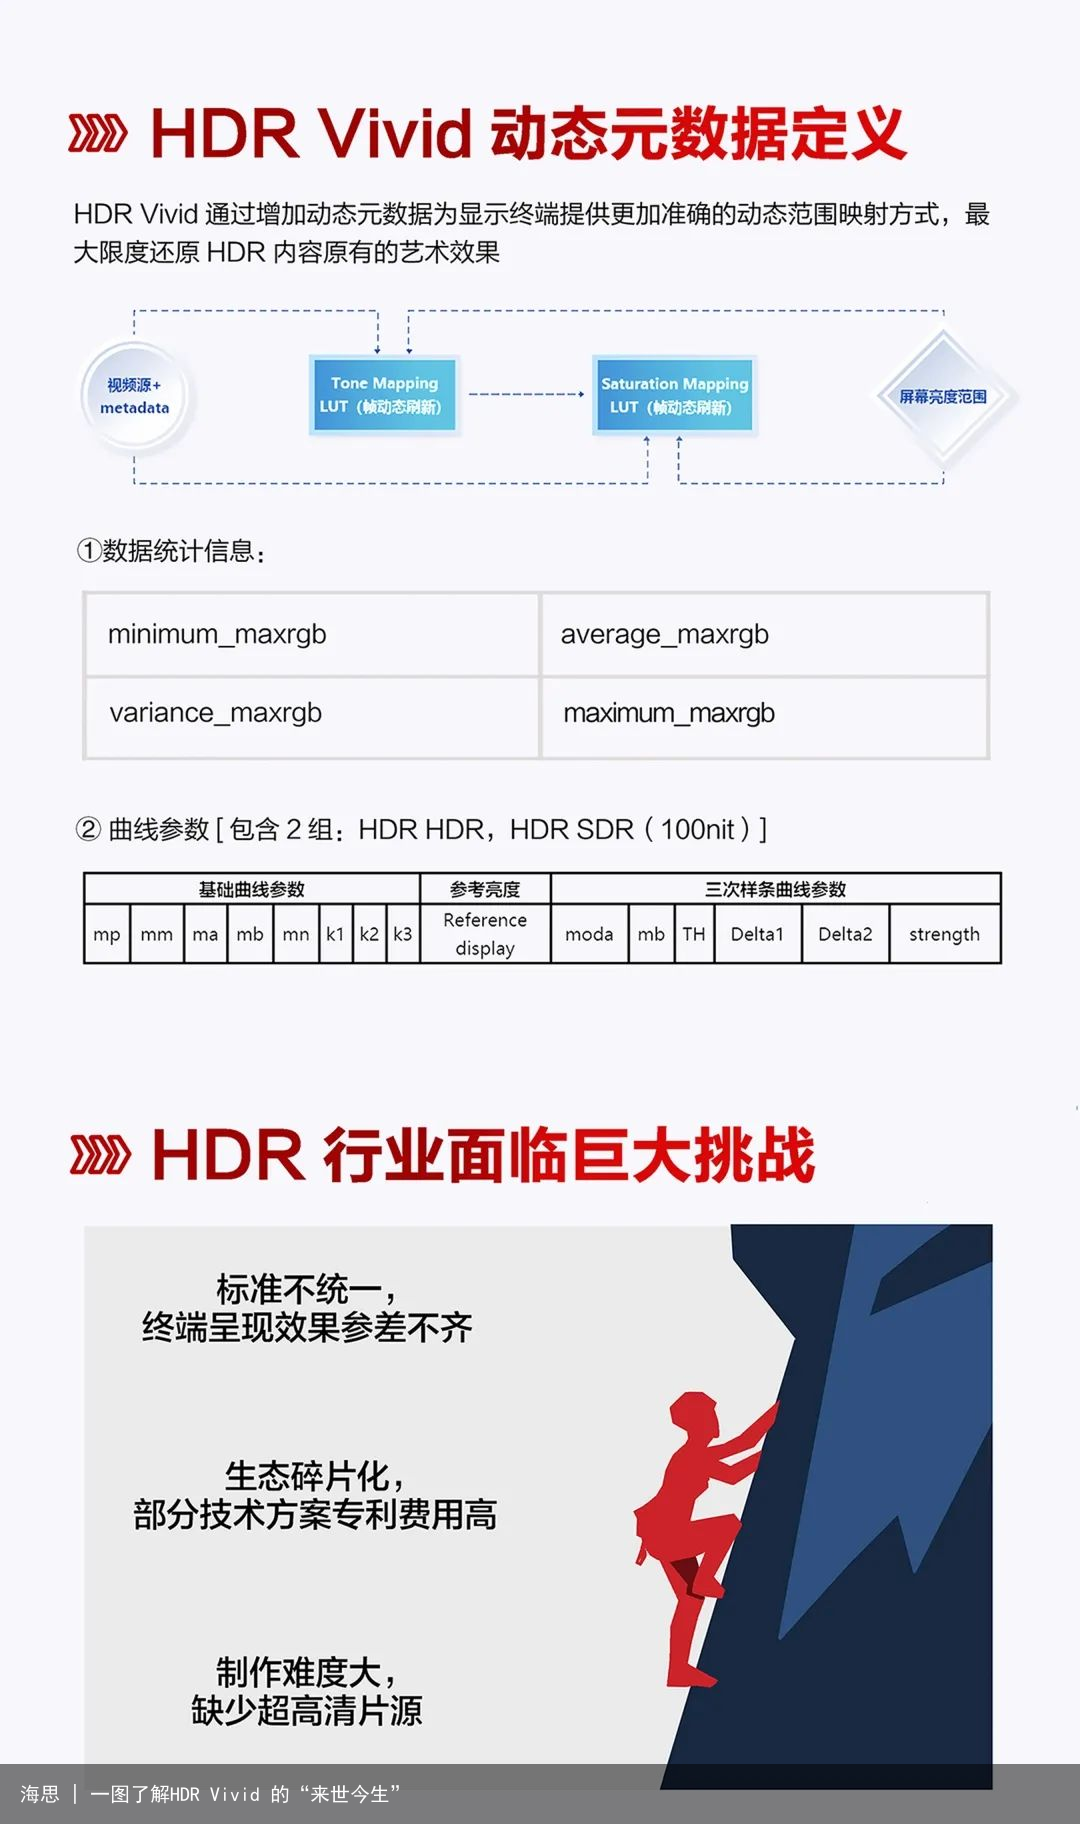 海思 | 一图了解HDR Vivid 的“来世今生”3